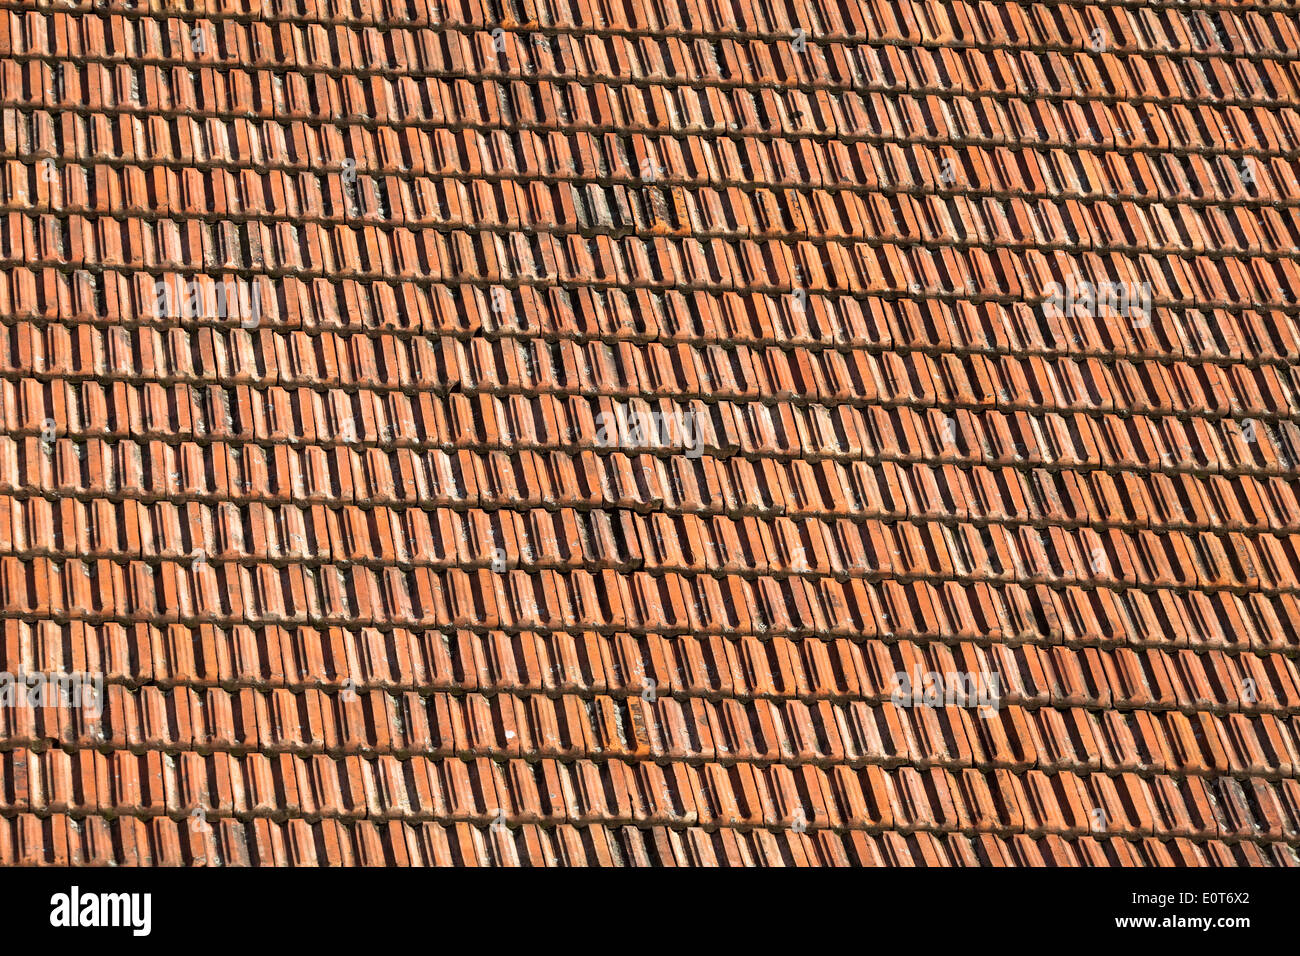 Dachschindel, Schindeldach - Shindels, roof Stock Photo